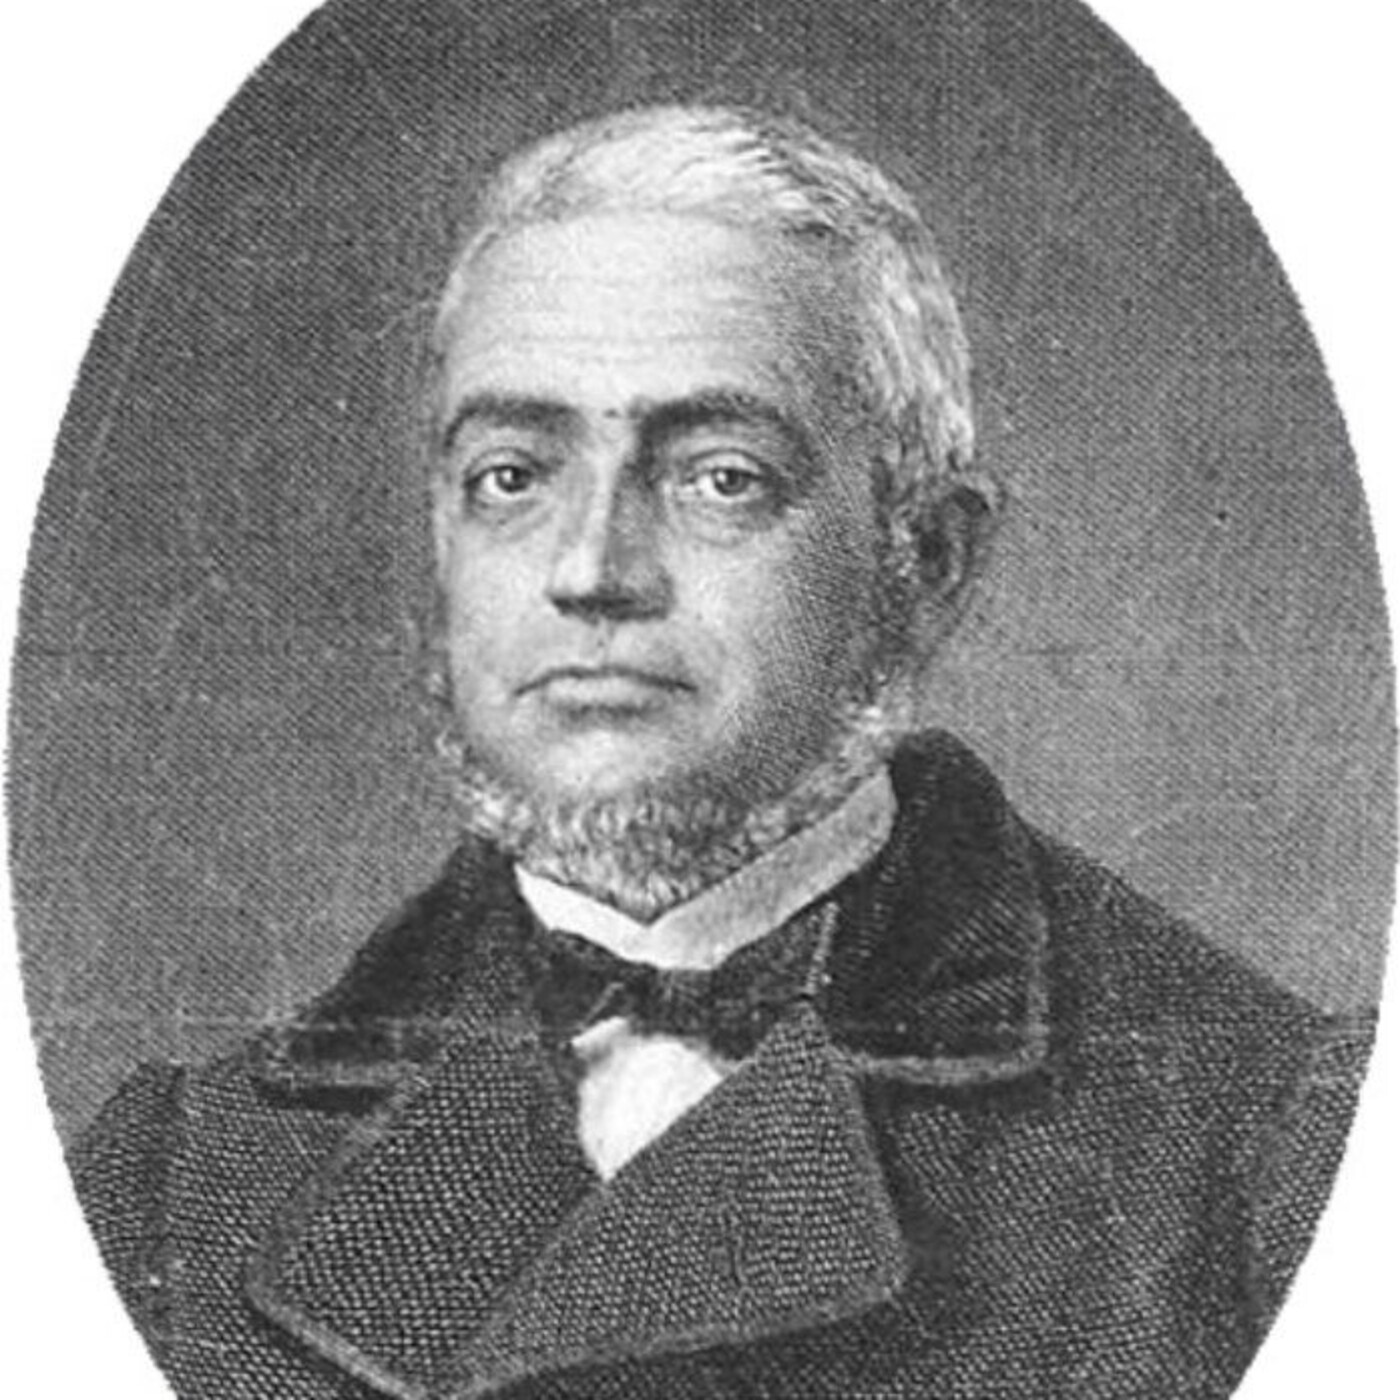 Ciencia en Más de Uno s03e06: Pedro González Velasco, pionero de la anatomía patológica; Genética de la estepa asiática